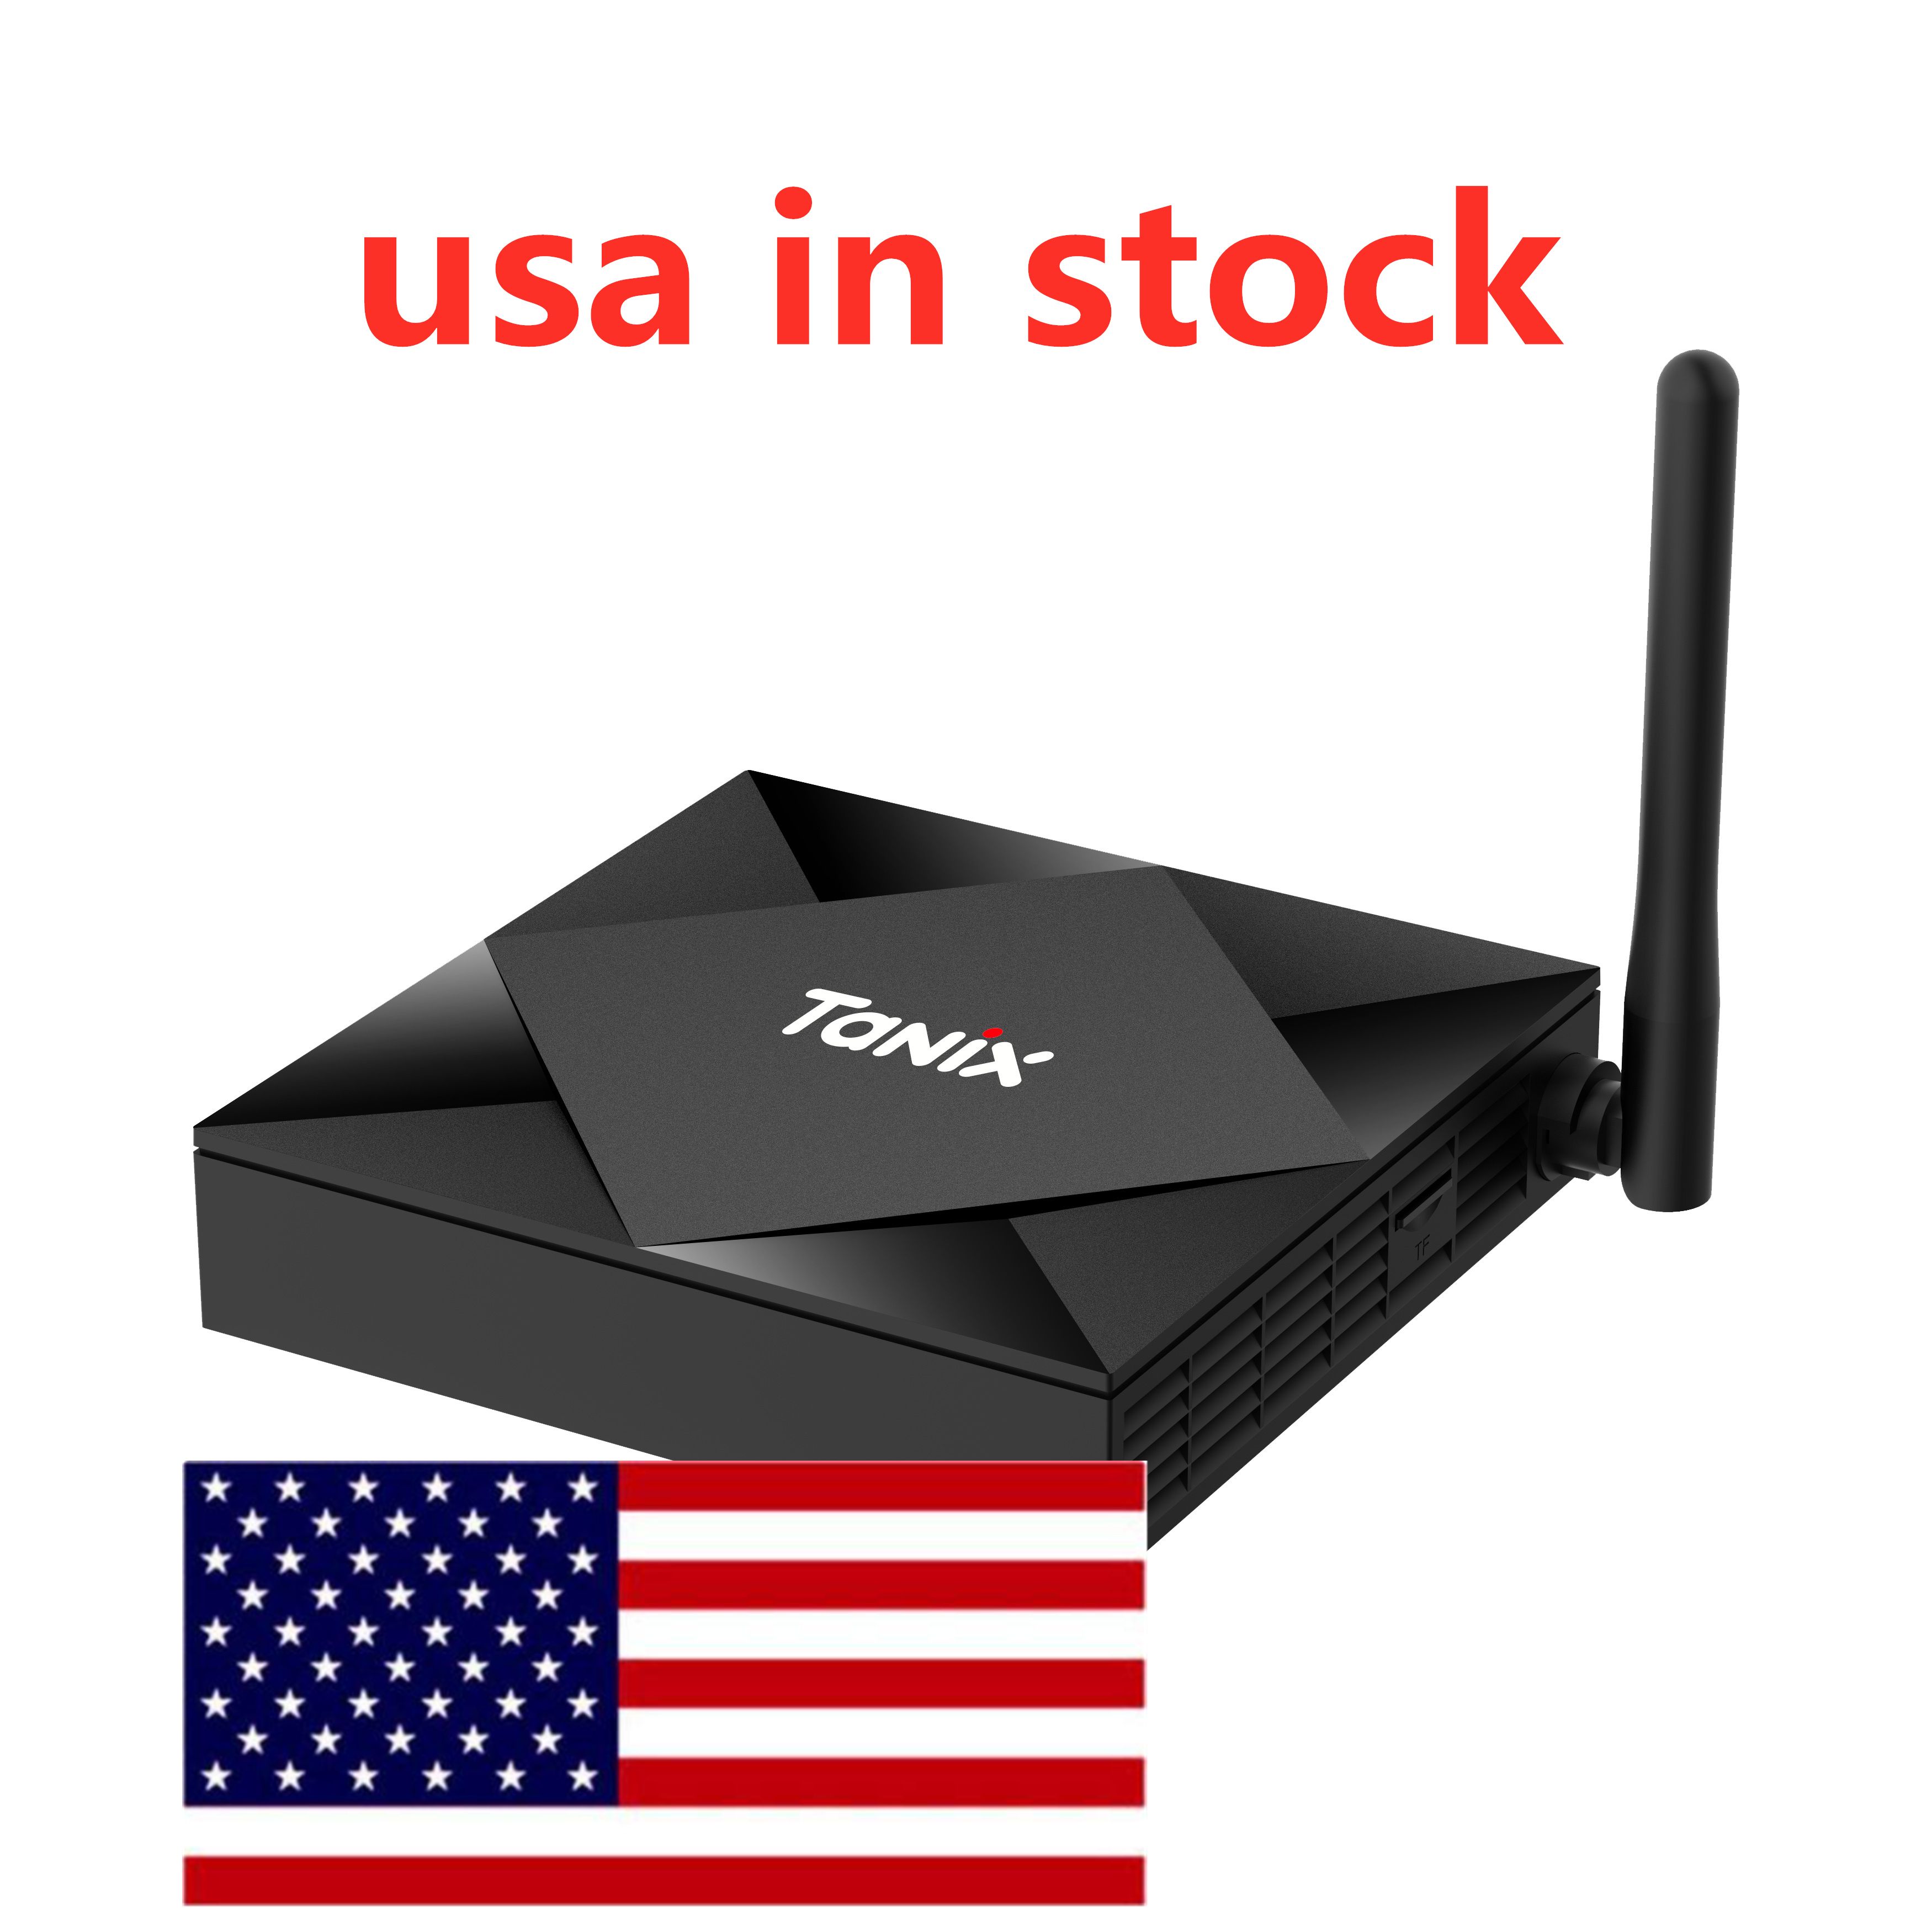 米国からの船TX6SテレビボックスAllwinner H616クワッドコア4G 32G二重WiFi BT Android 10 OS 4K H.265